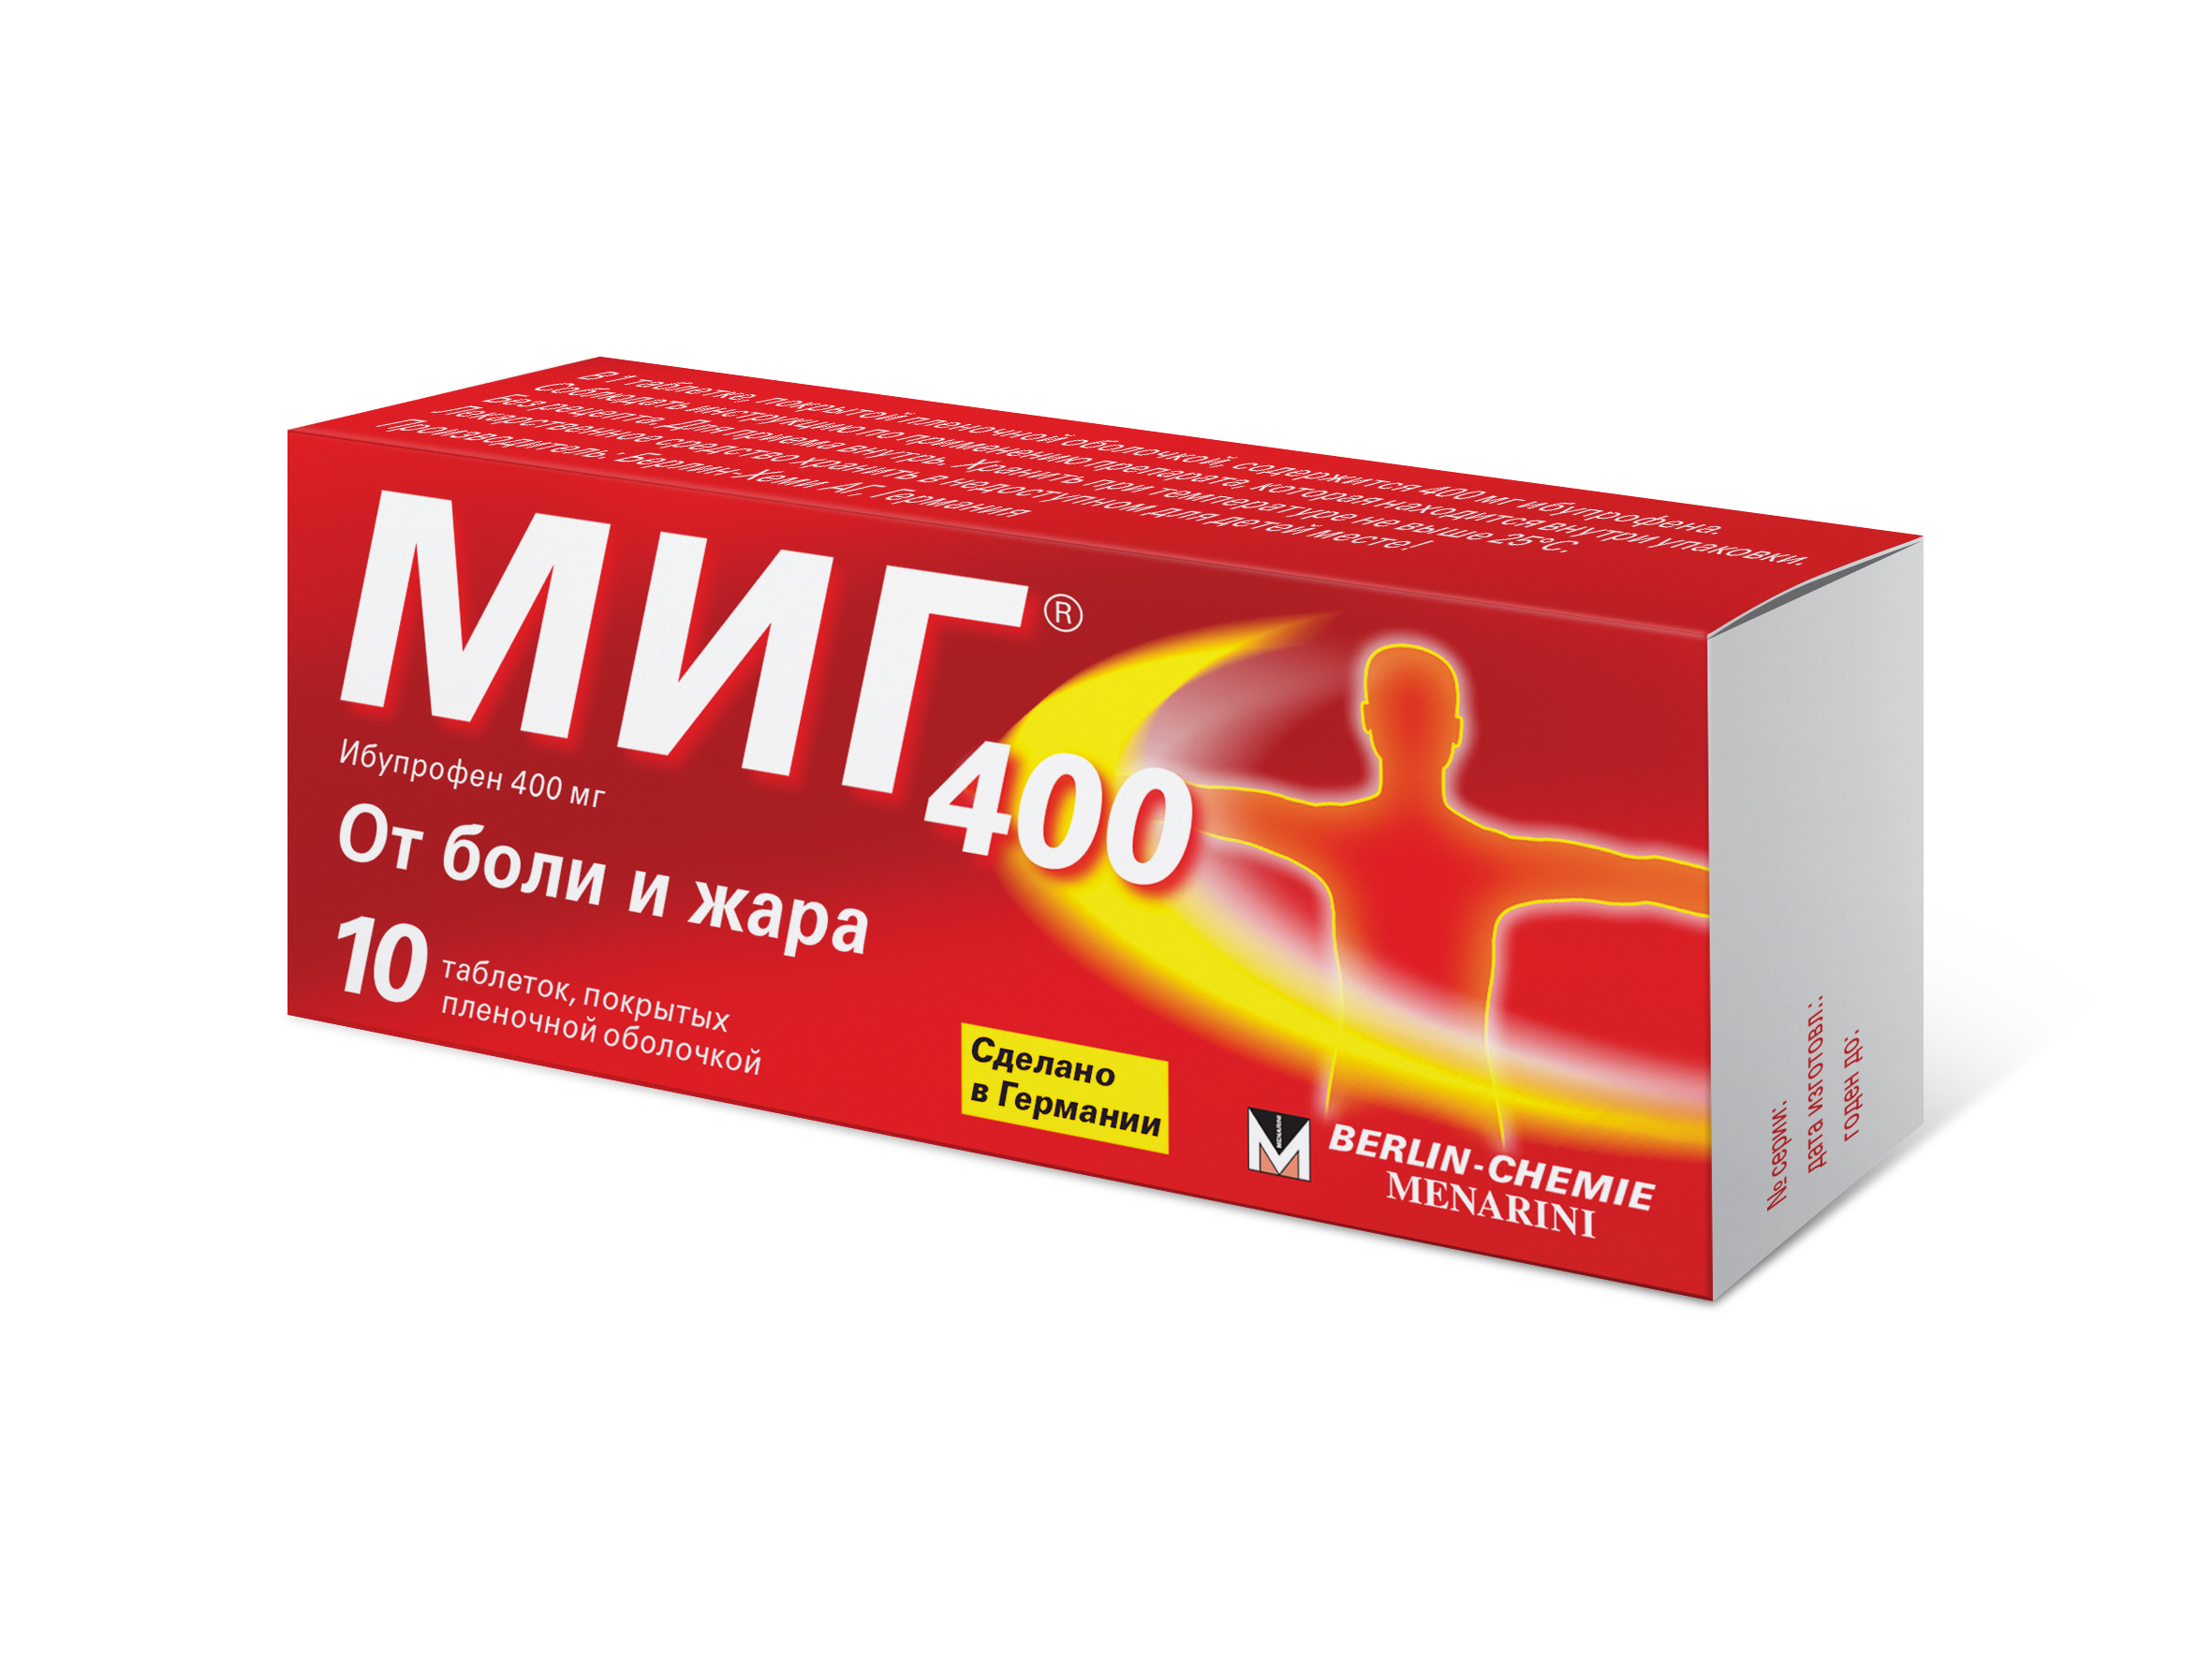 Миг 400 таблетки покрытые пленочной оболочкой 400 мг 10 шт купить по цене 85,0 руб в Москве, заказать лекарство в интернет-аптеке: инструкция по применению, доставка на дом